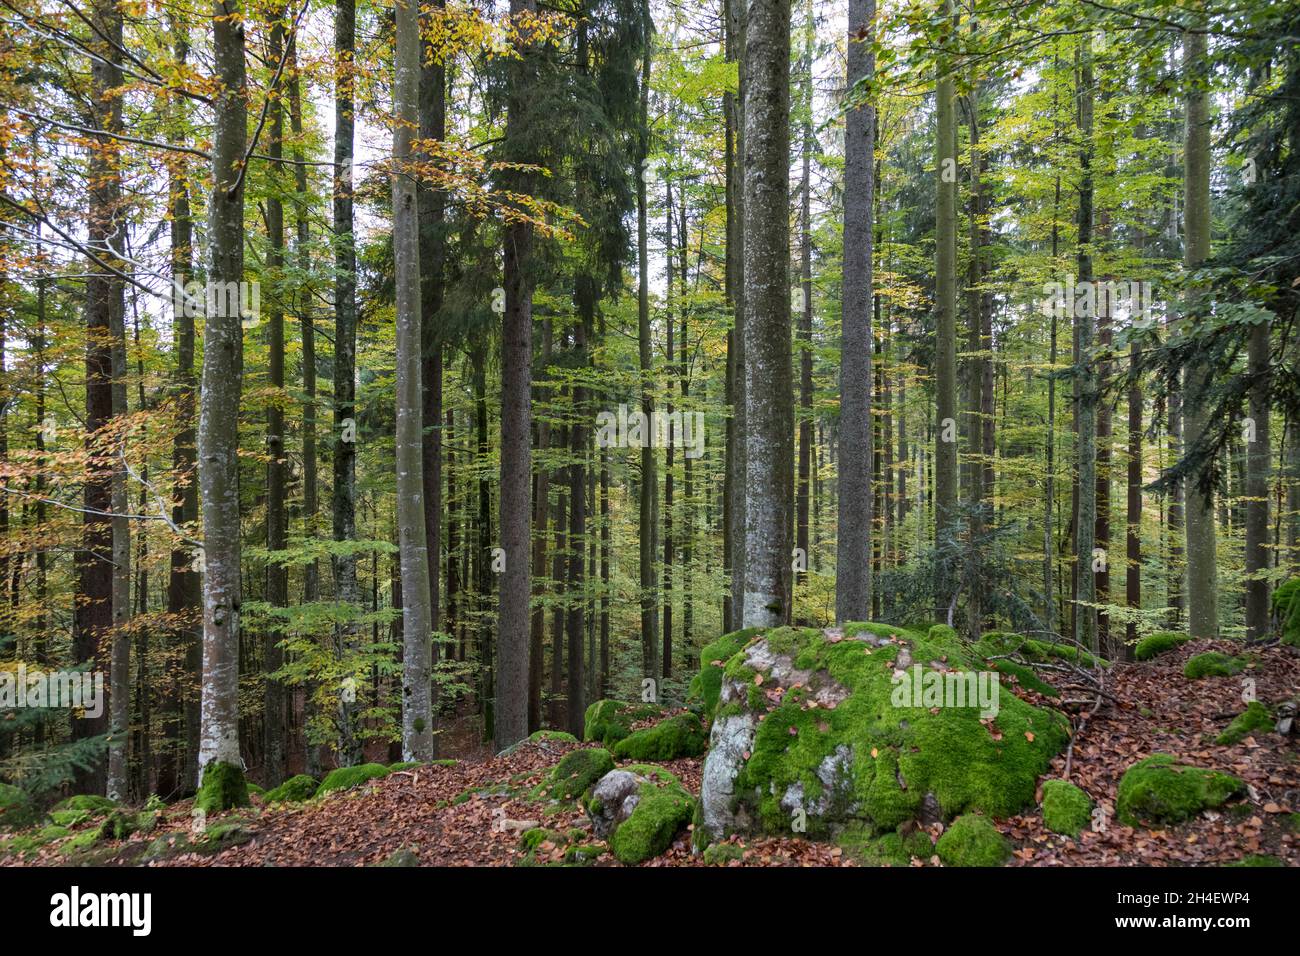 Buchenmischwald, foresta mista di faggio Foto Stock